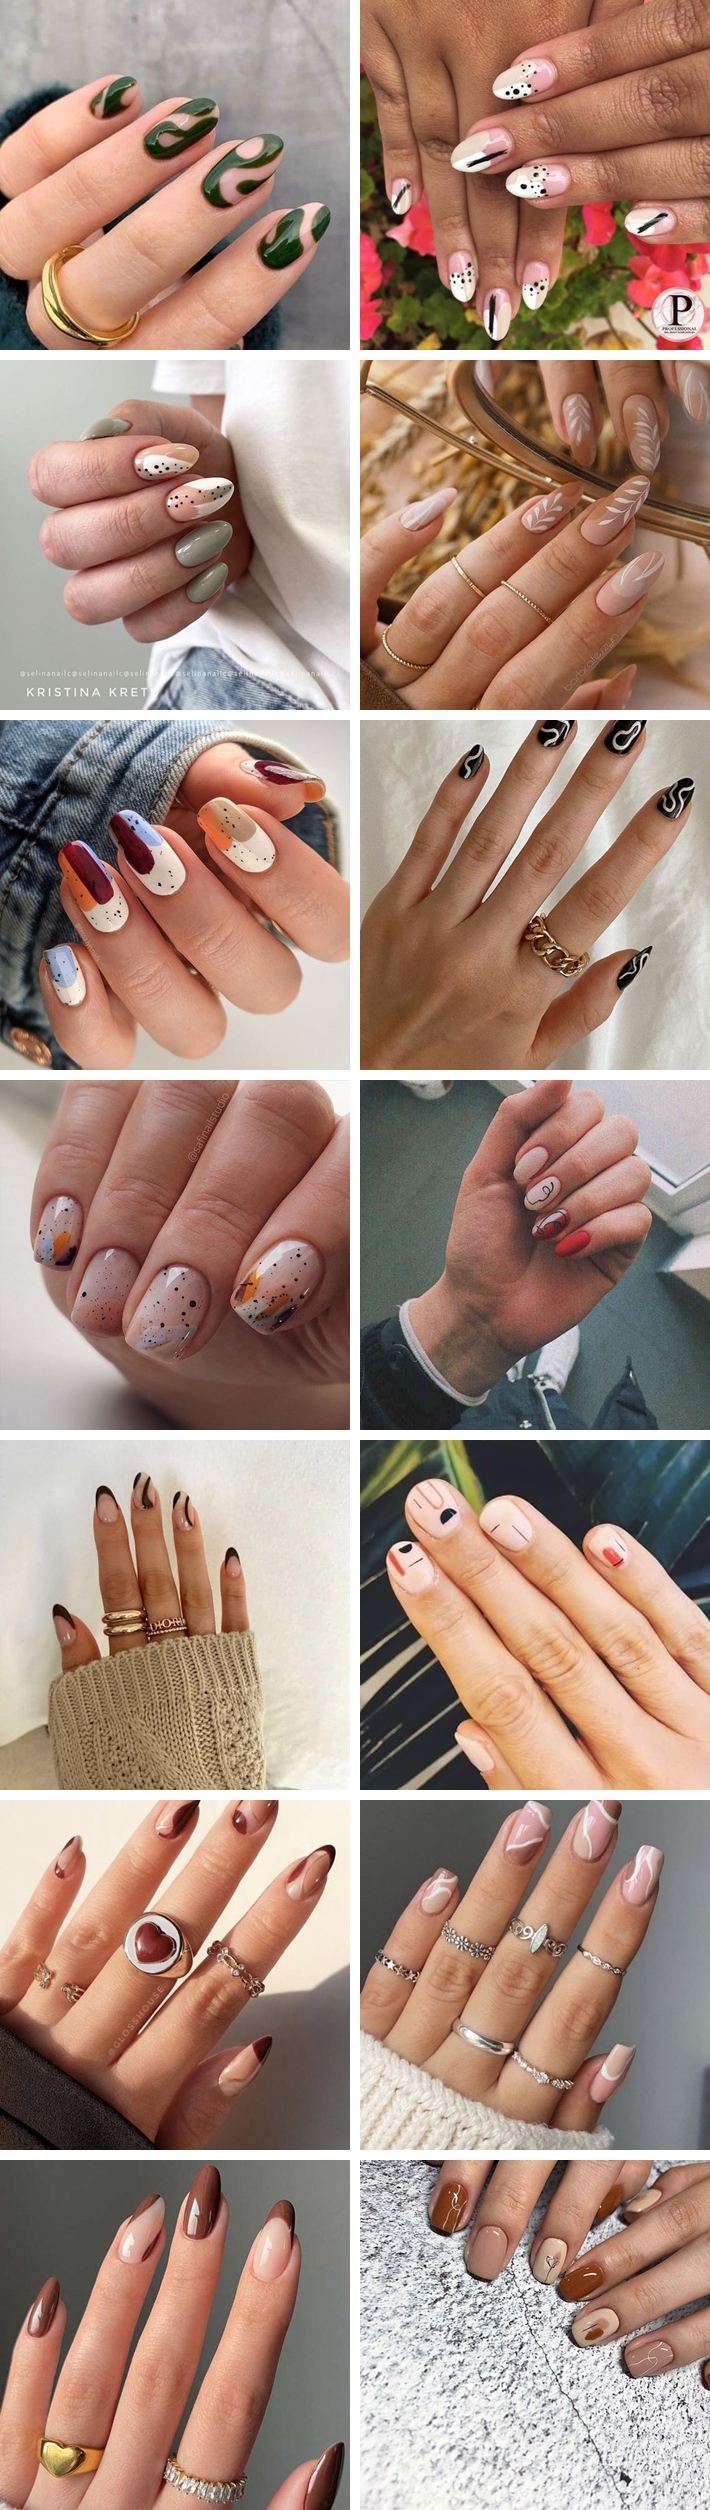 modne paznokcie na jesień 2021 - abstrakcyjne wzory inspiracje